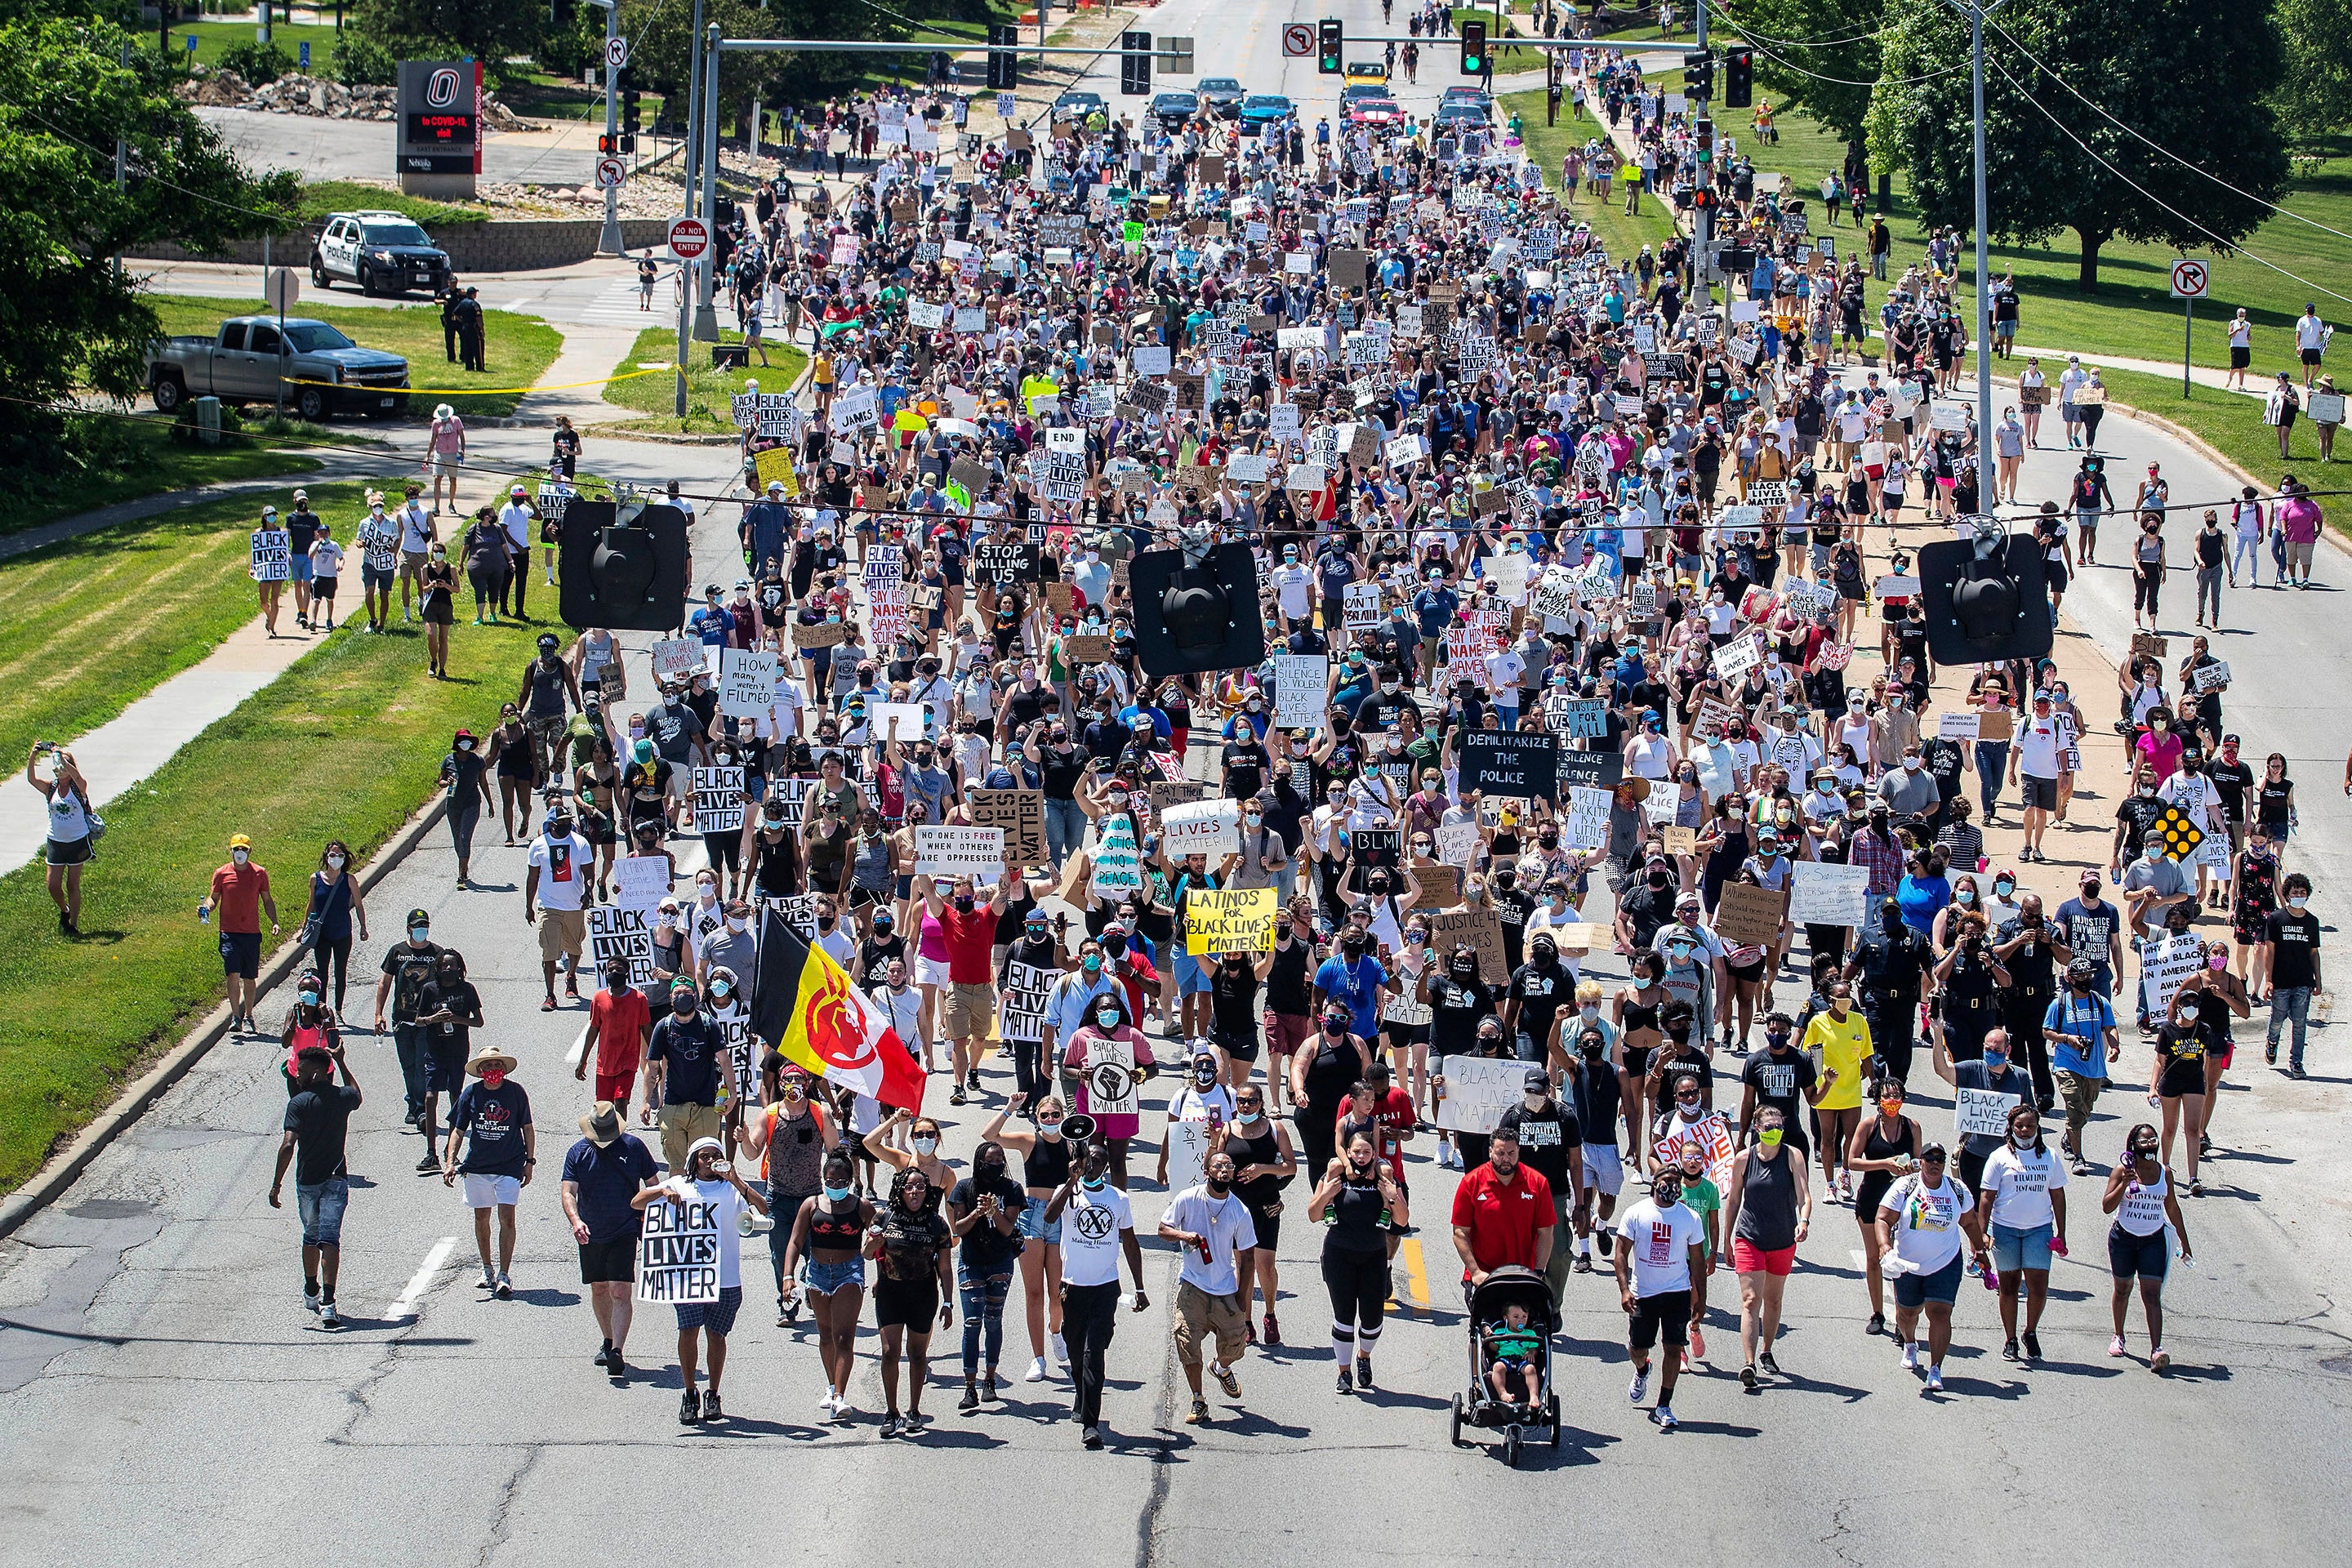 Multitudes marcharon en memoria de James Scurlock, quien fue asesinado en Omaha, Nebraska en medio de protestas.